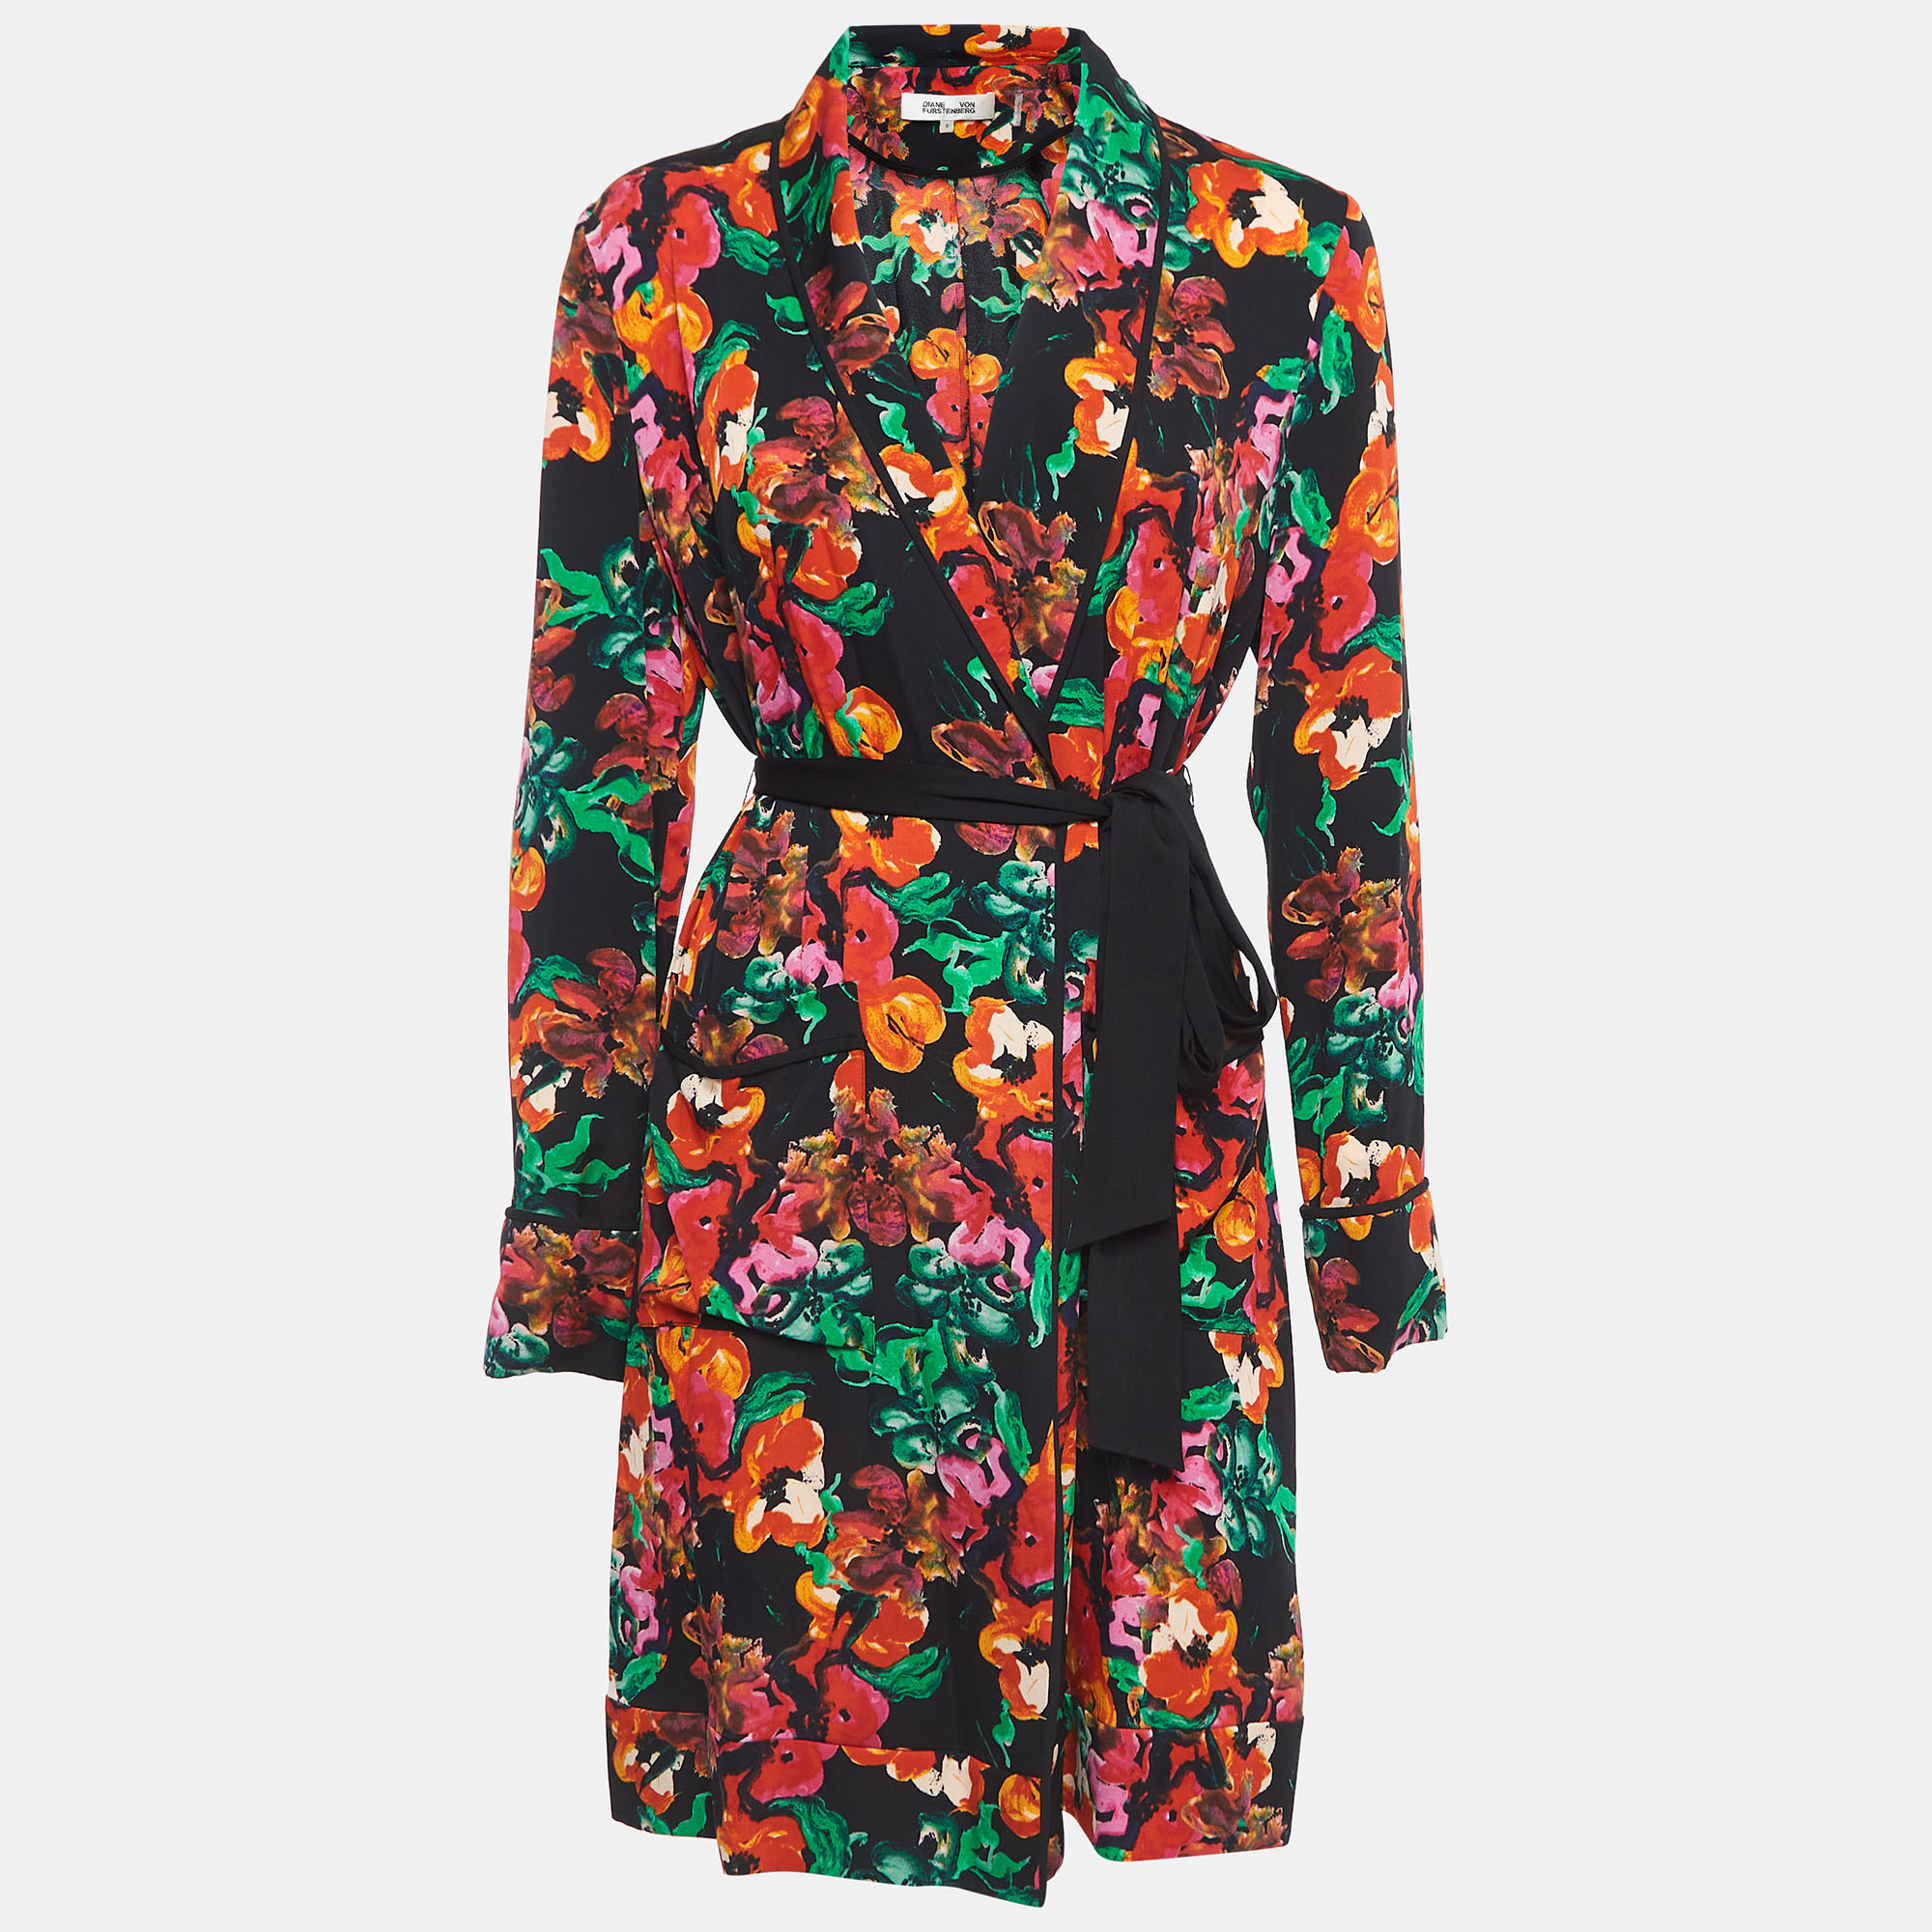 Diane von furstenberg multicolour printed georgette belted jacket s